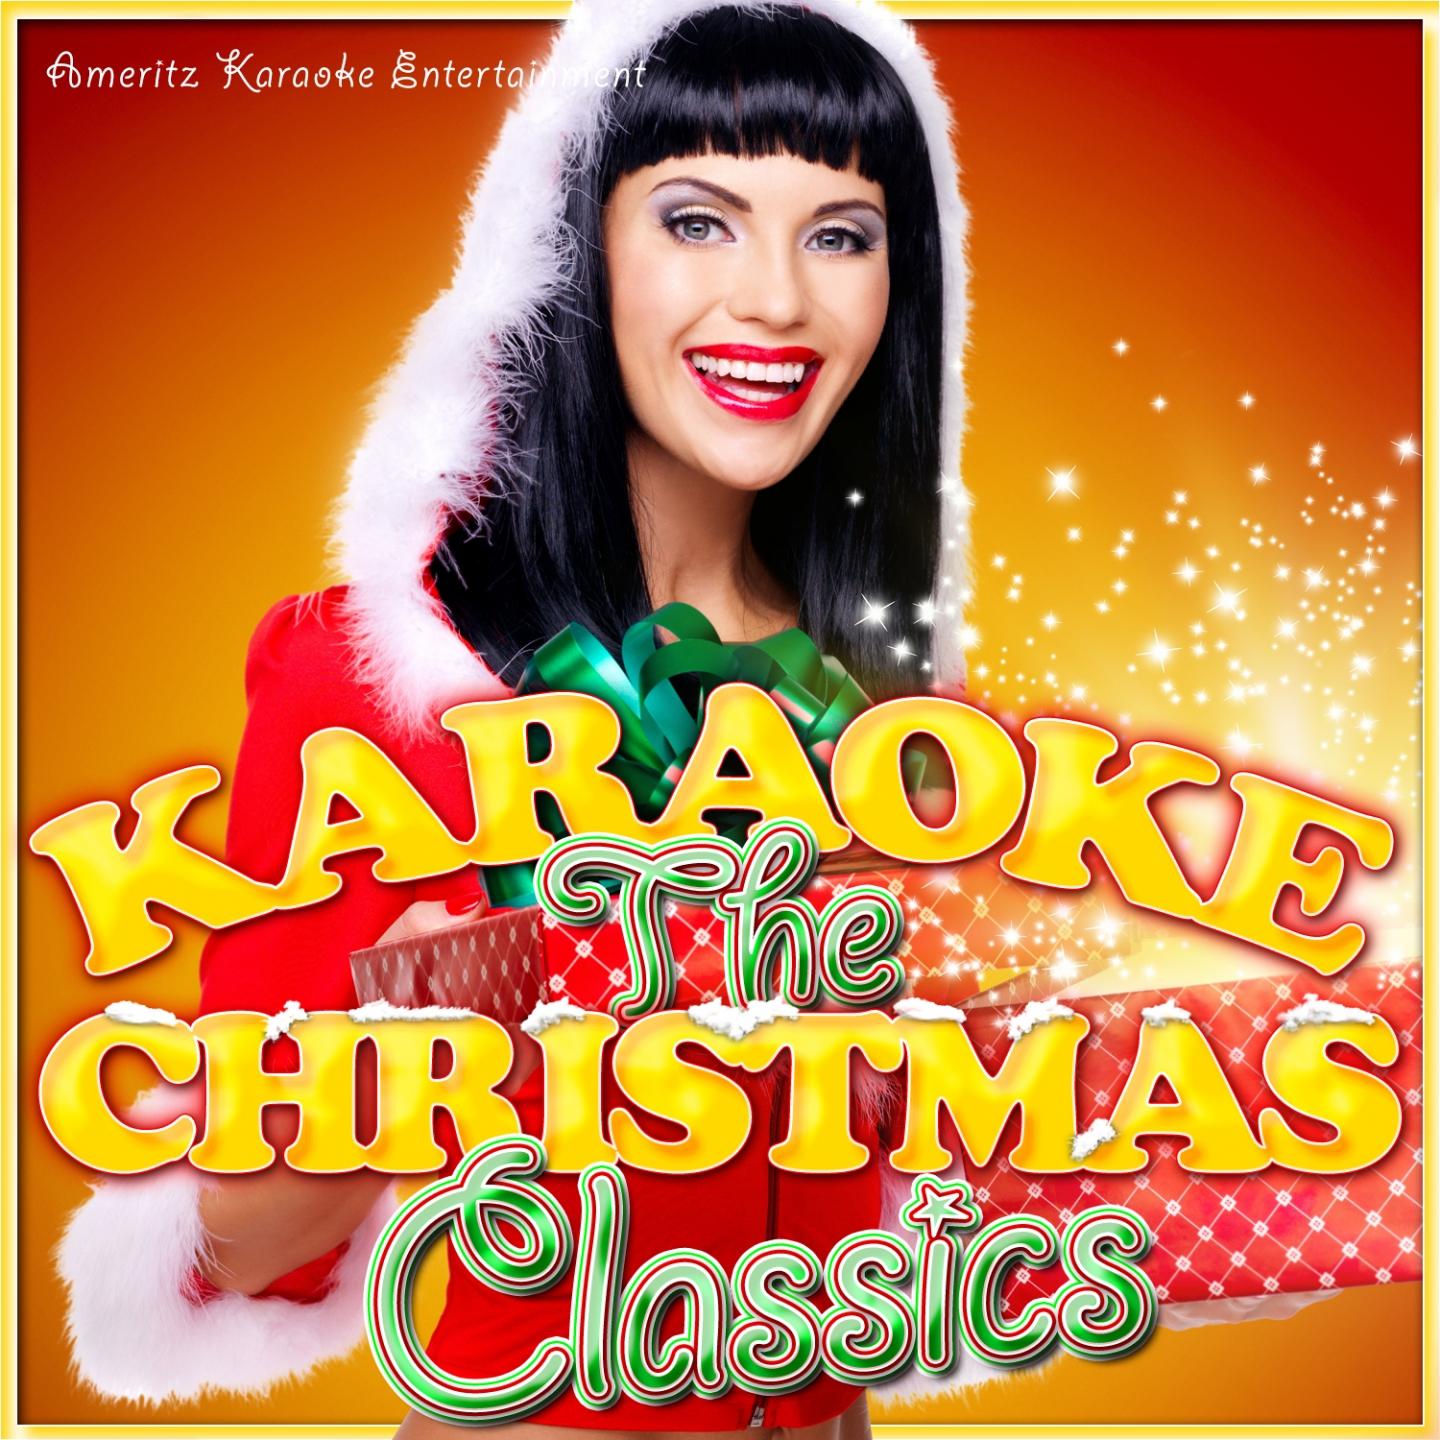 If We Make It Through December (Karaoke Version) [Originally Performed By Merle Haggard]